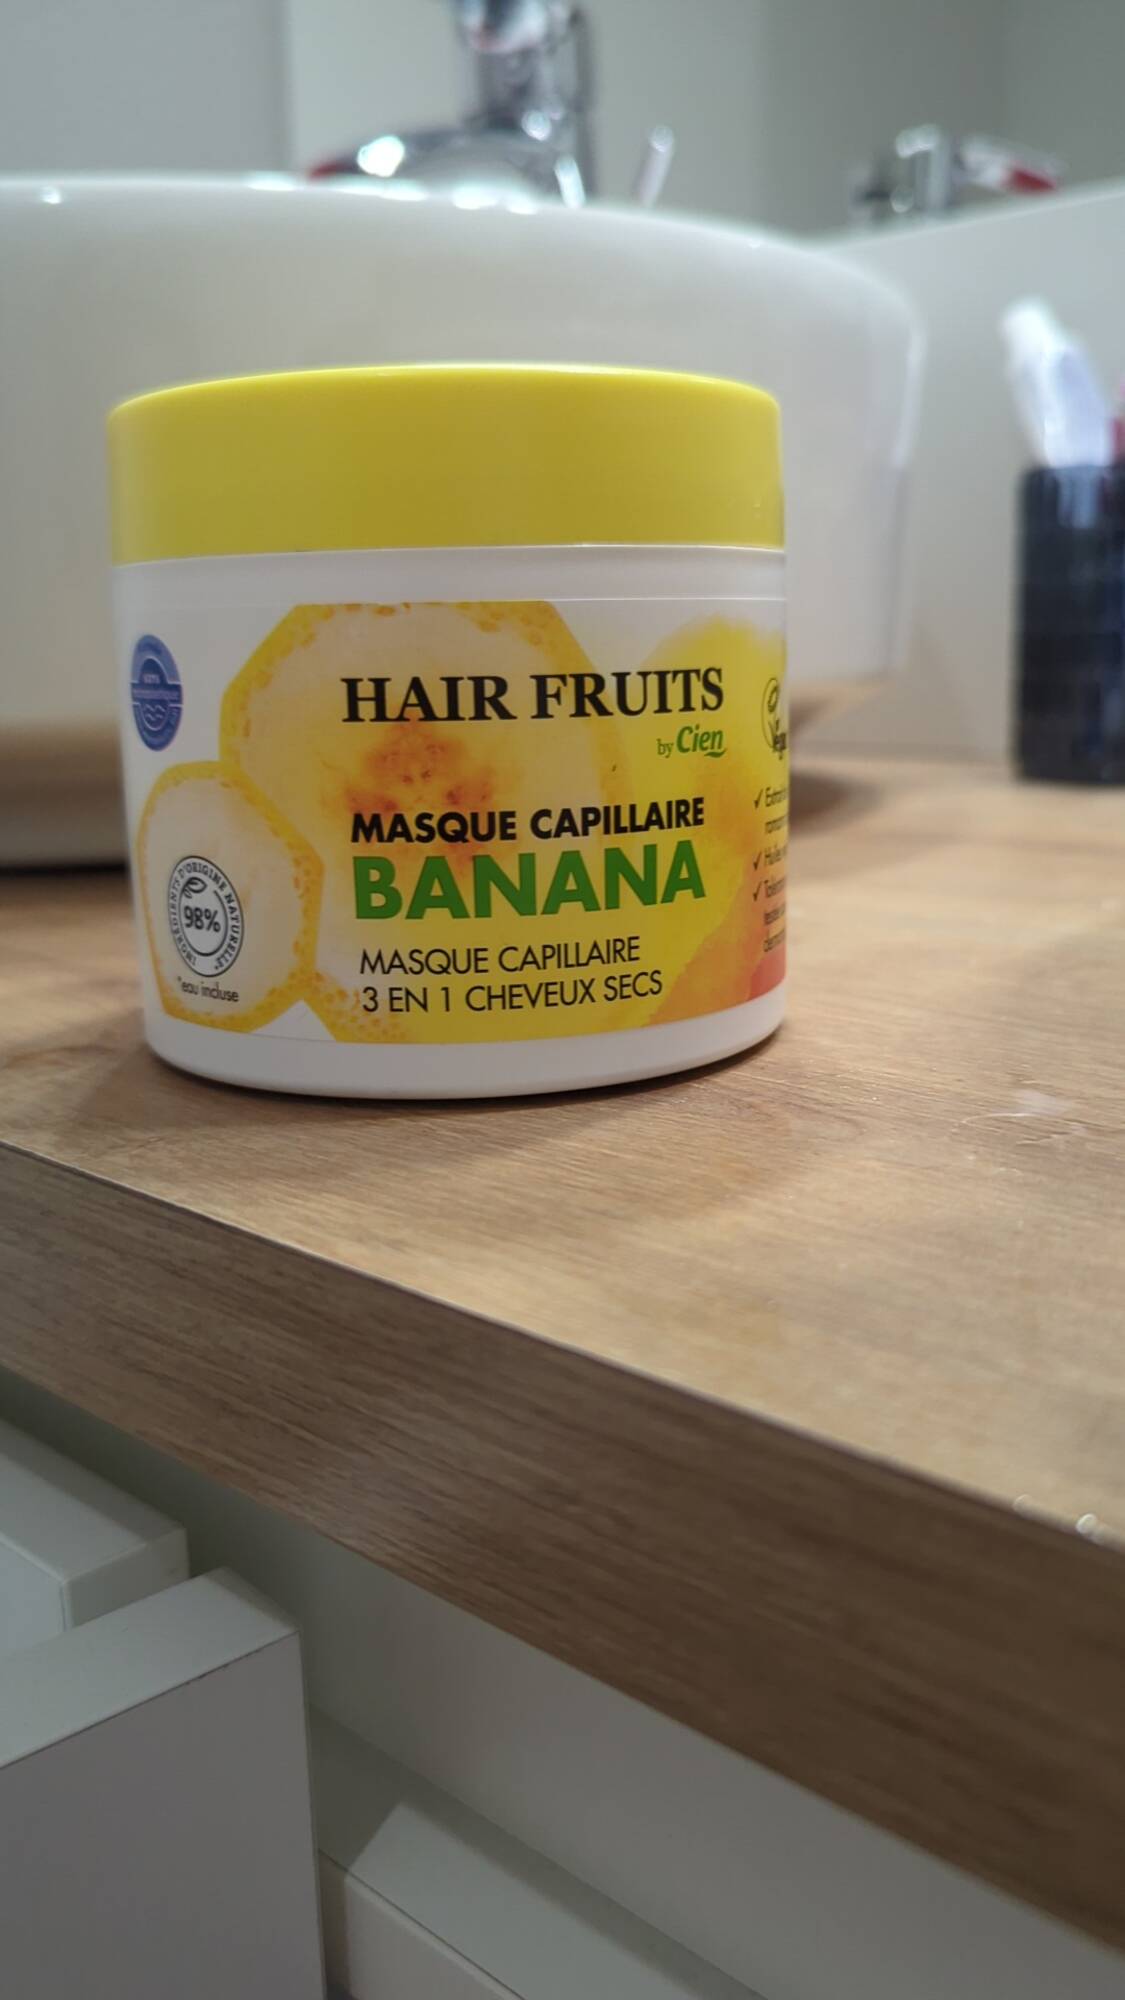 CIEN - Hair fruits - Masque capillaire banana